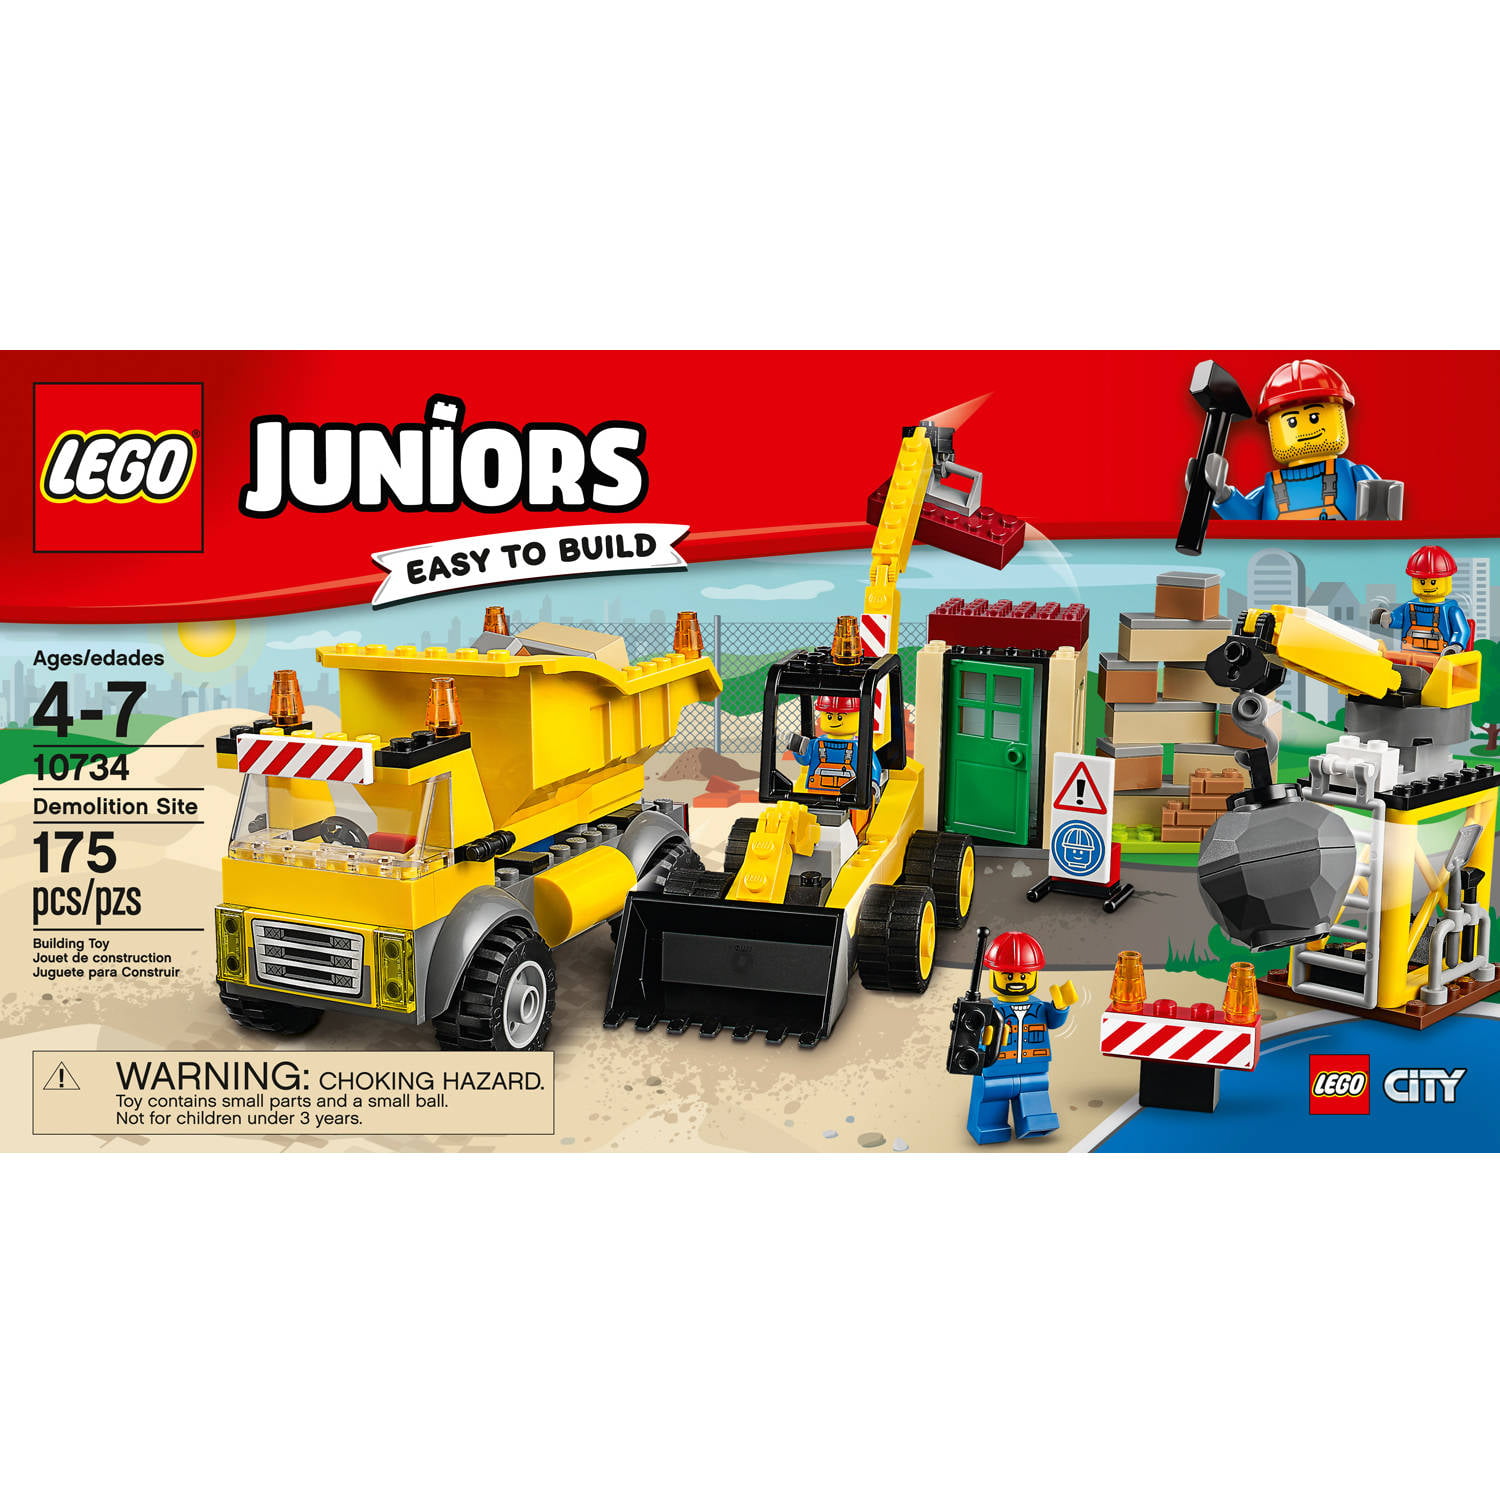 LEGO Juniors Demolition Site 10734 